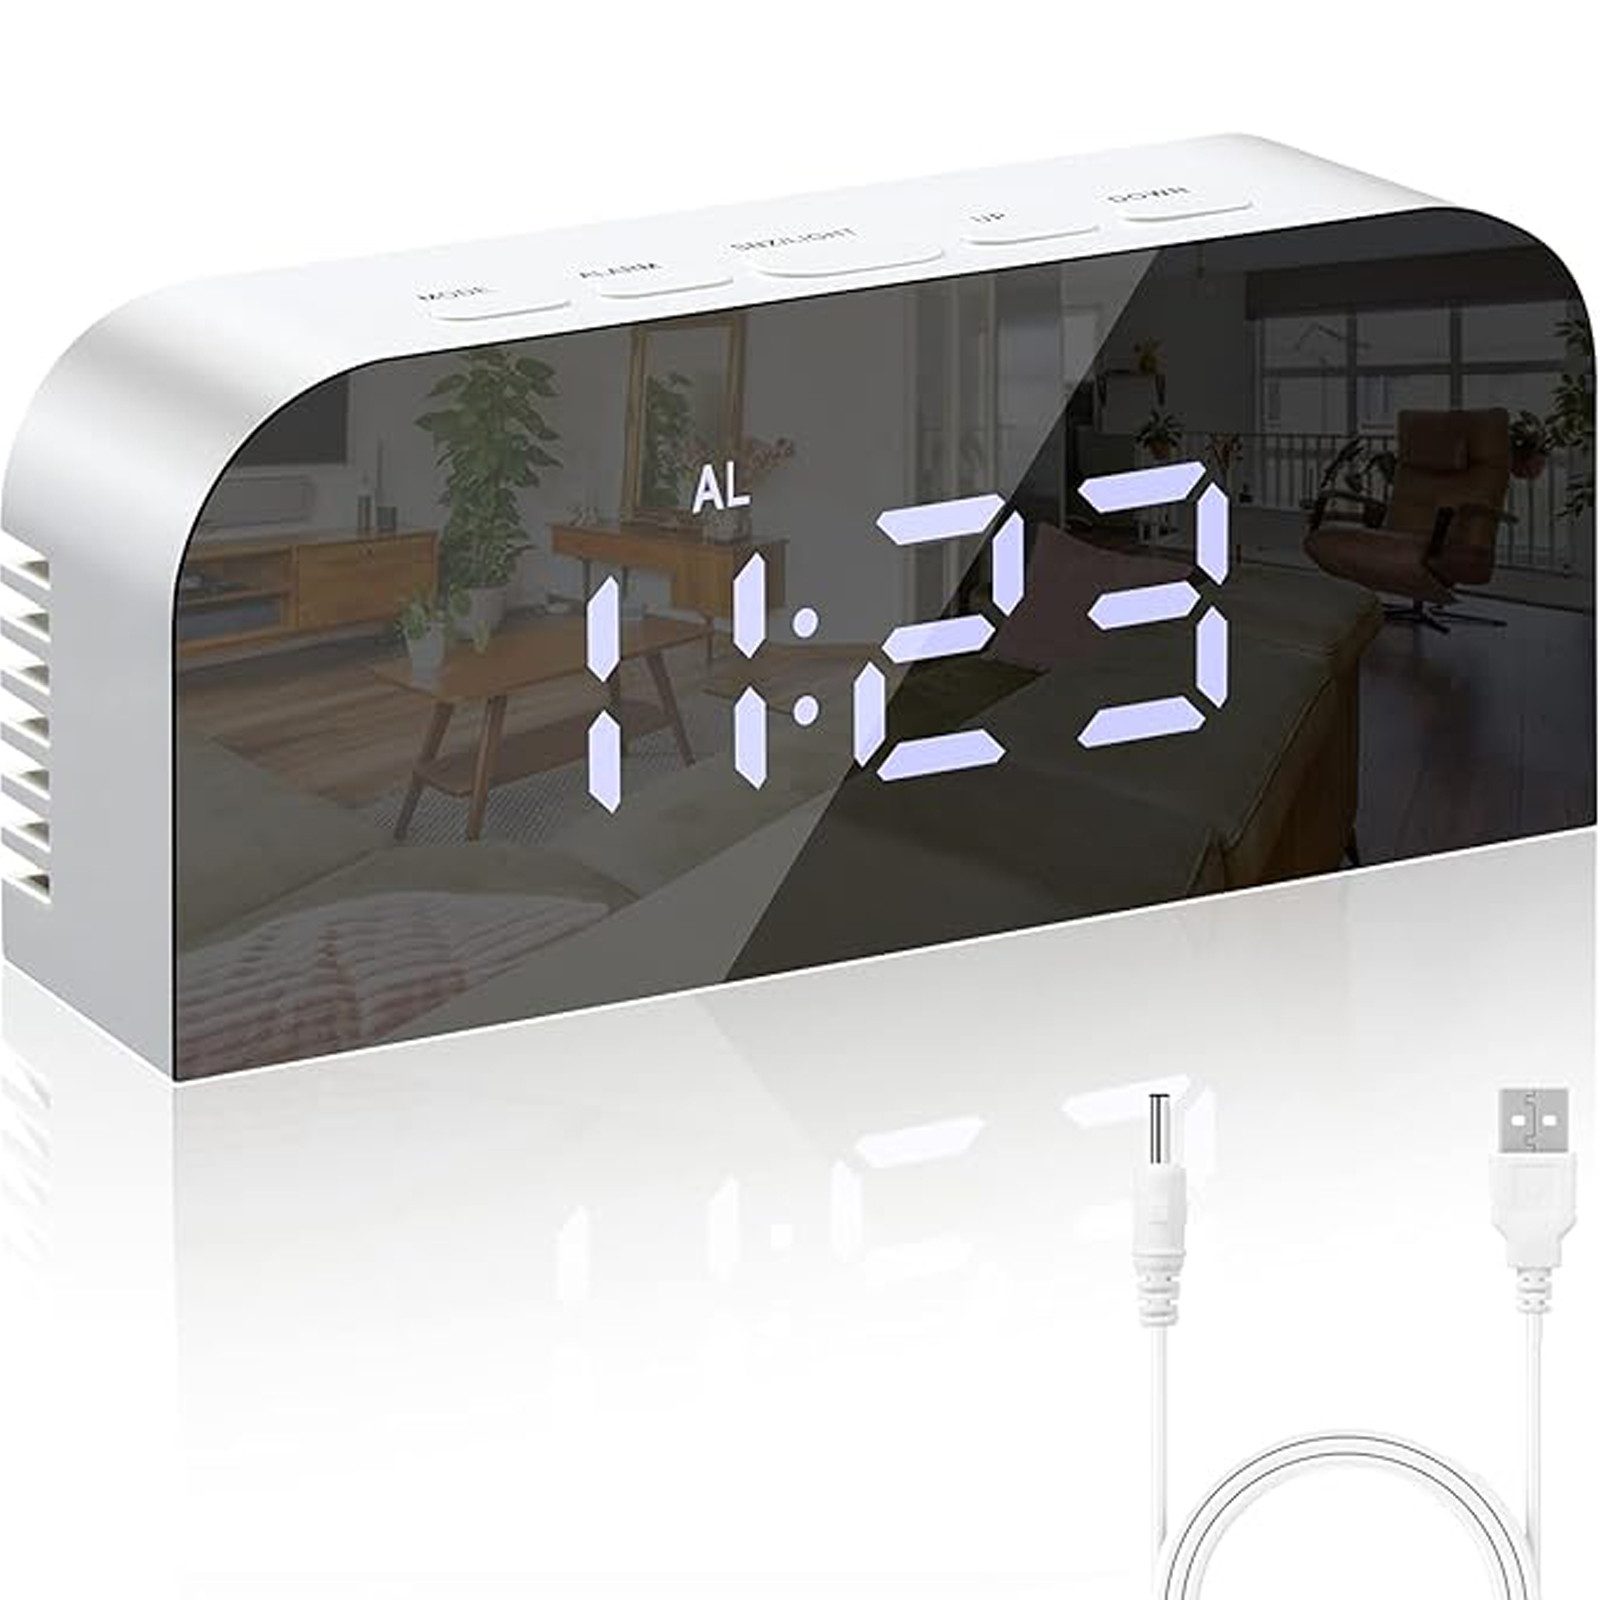 MODFU Wecker Digital Spiegel Wecker Uhr LED Digitalwecker Digitaluhr Alarm 12/24H mit 2 Helligkeitsstufen 2 USB Alarmer Temperatur Schlummerfunktion